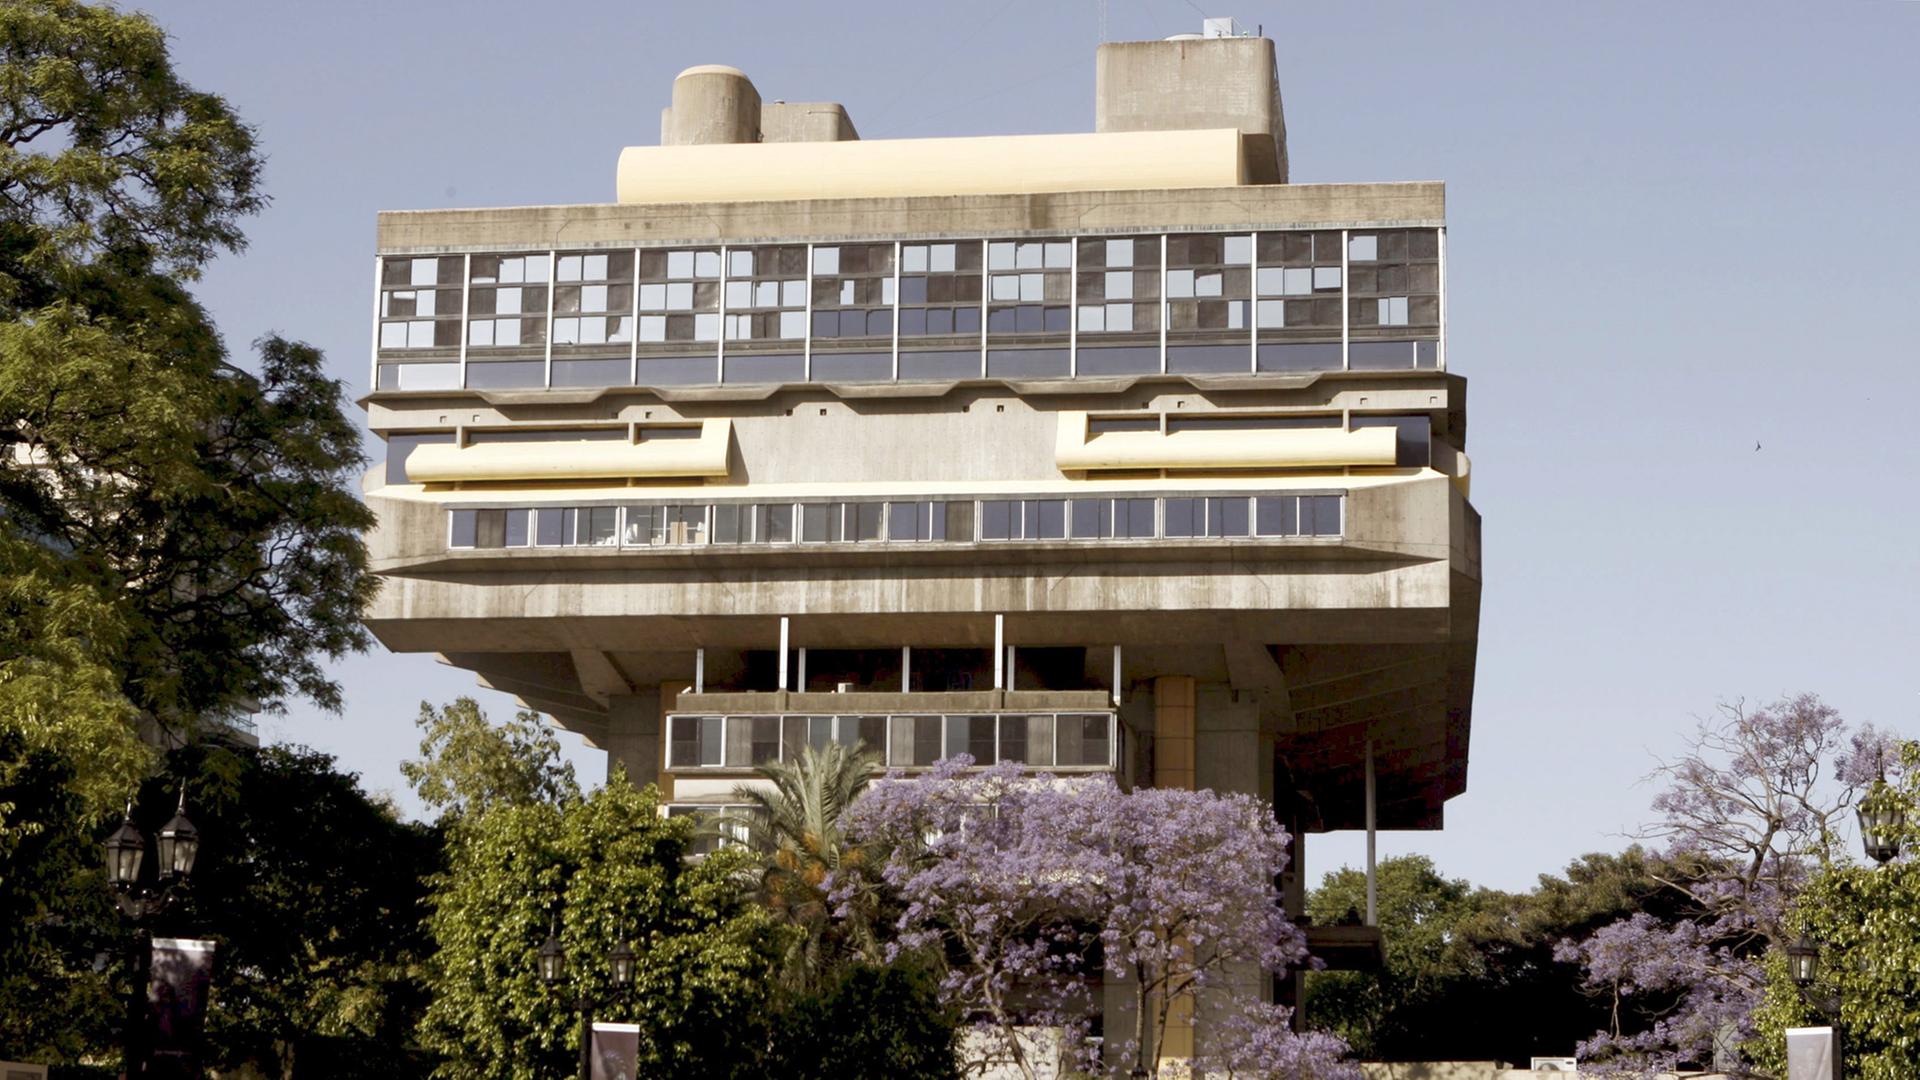 Die Biblioteca Nacional in Buenos Aires, aufgenommen am 17.11.2008. Sie wurde von den Architekten Clorindo Testa, Alicia Cazzanica und Francisco Bullrich 1960 entworfen und 1962 fertiggestellt.